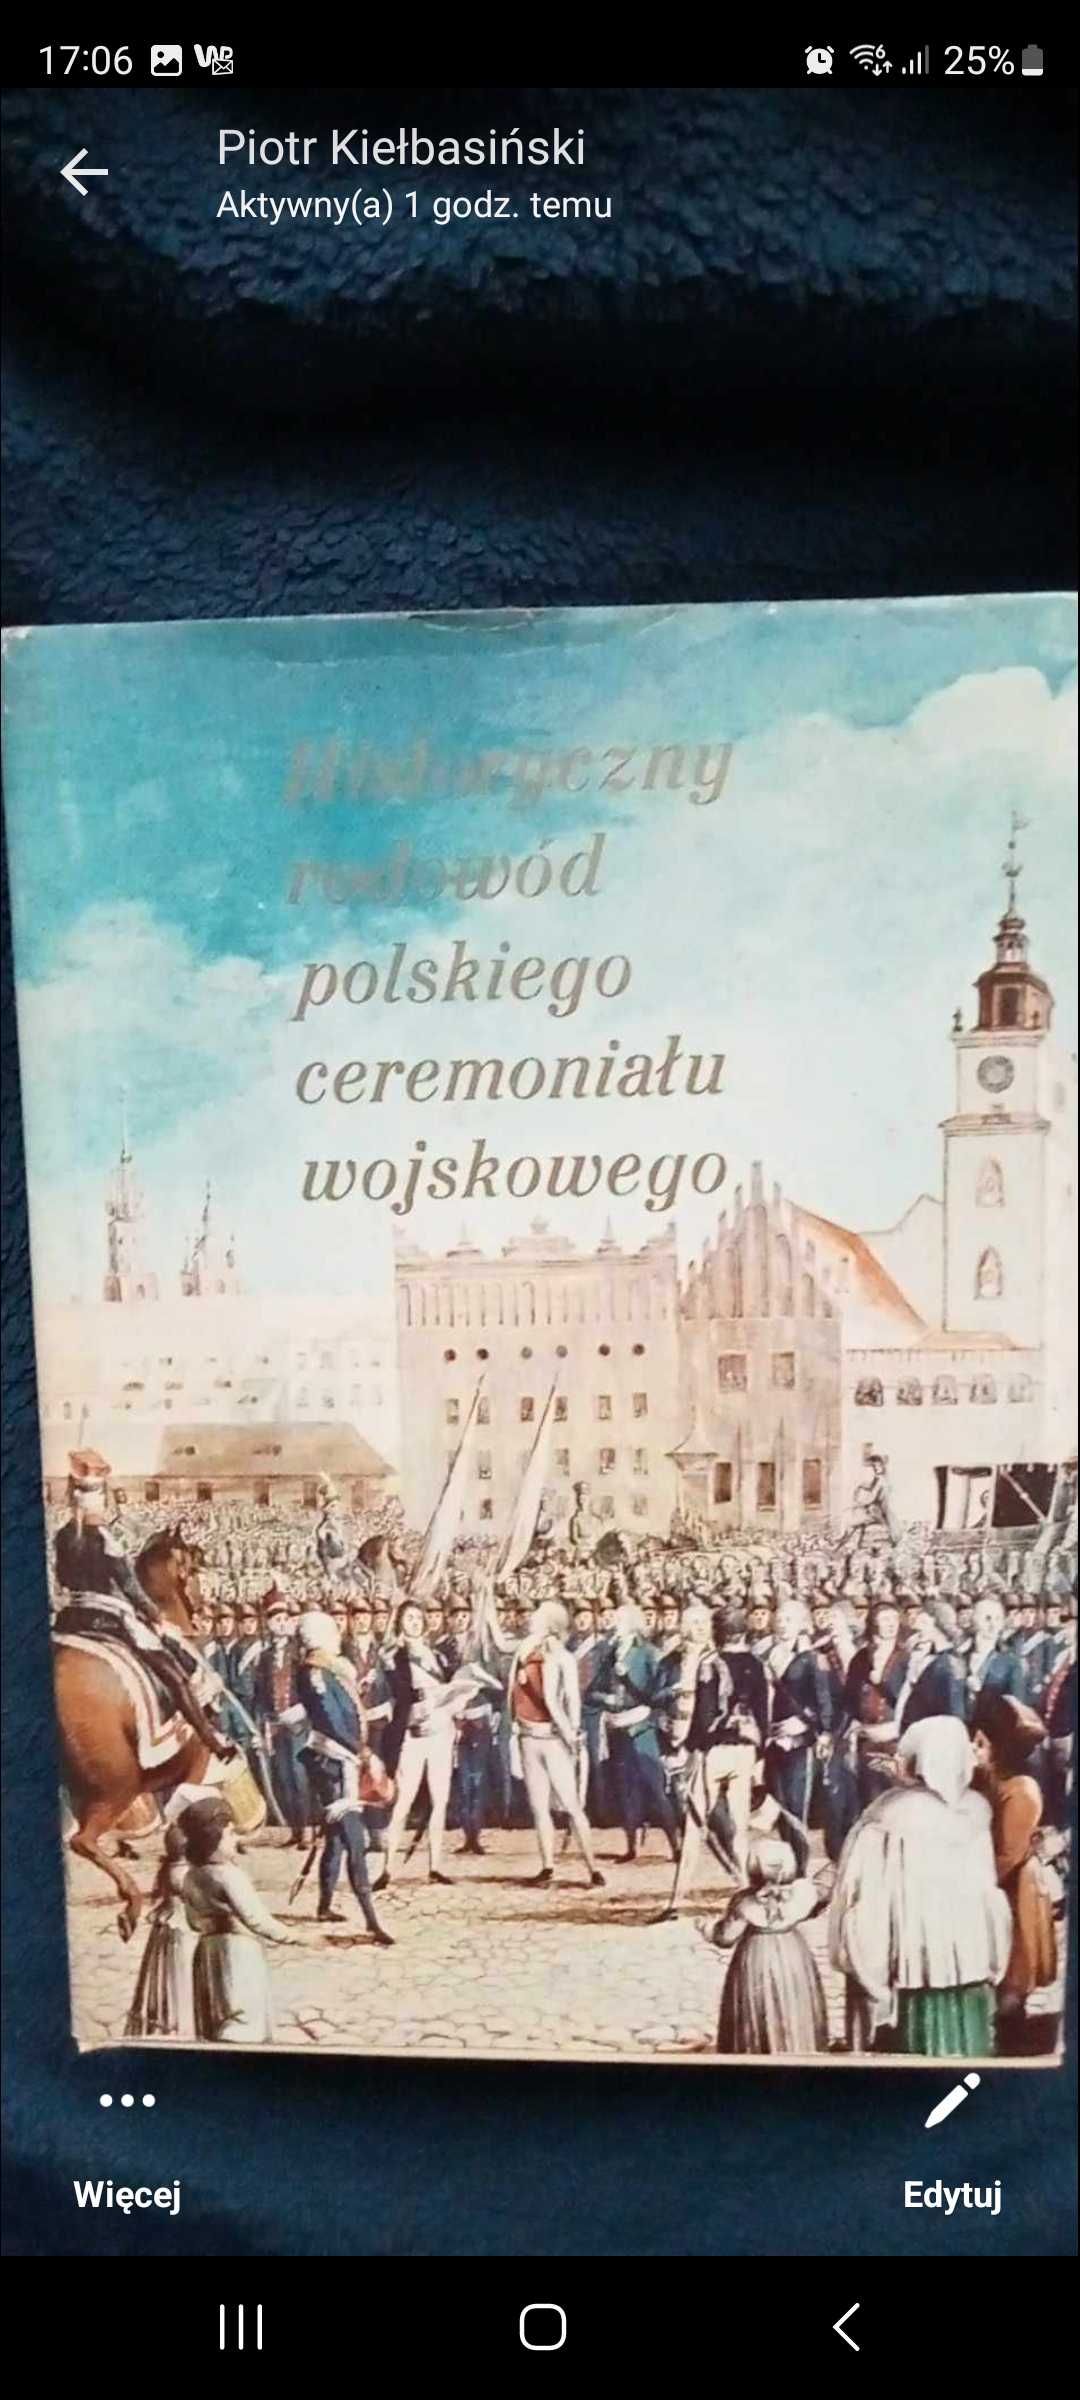 Historyczny rodowód polskiego ceremoniału